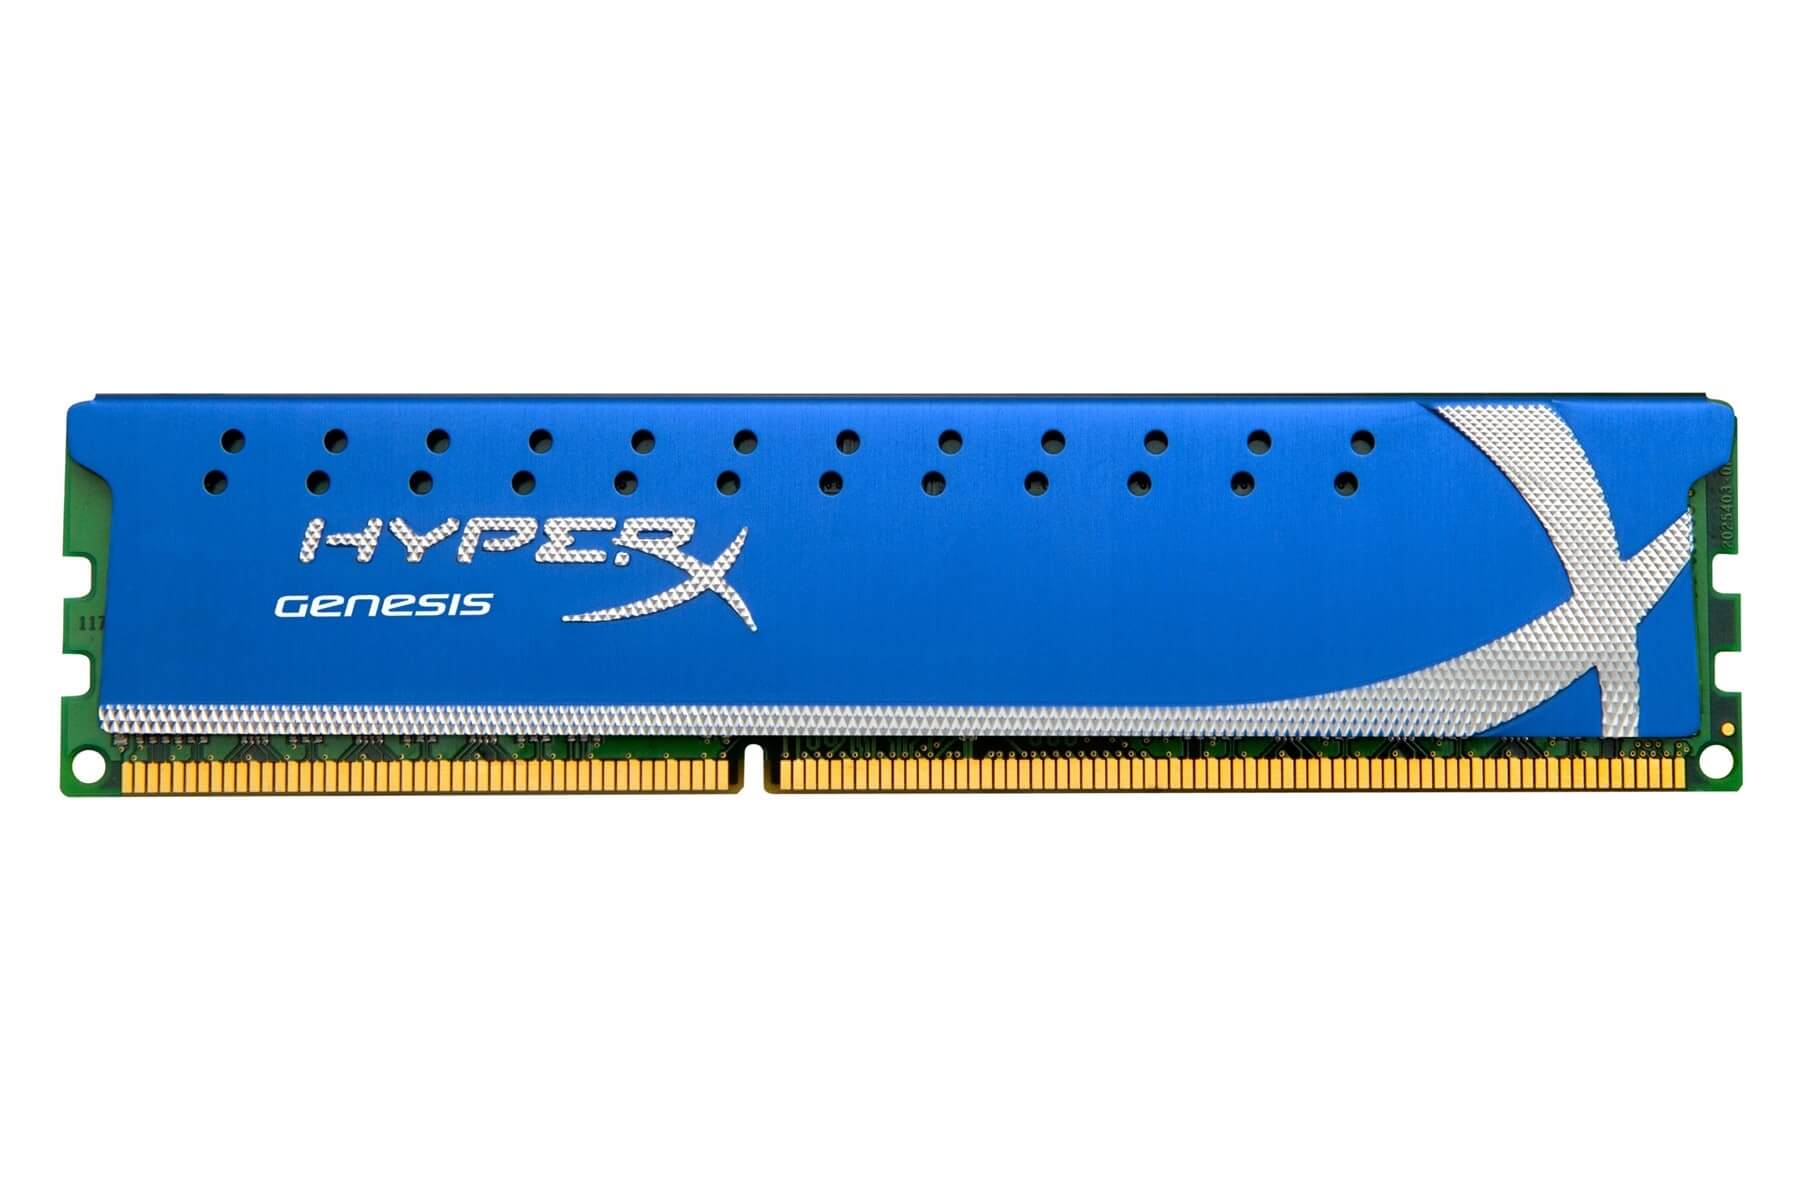 PAMIĘĆ RAM HYPERX GENESIS BLUE DDR3 4GB 1600 MHz DO PC